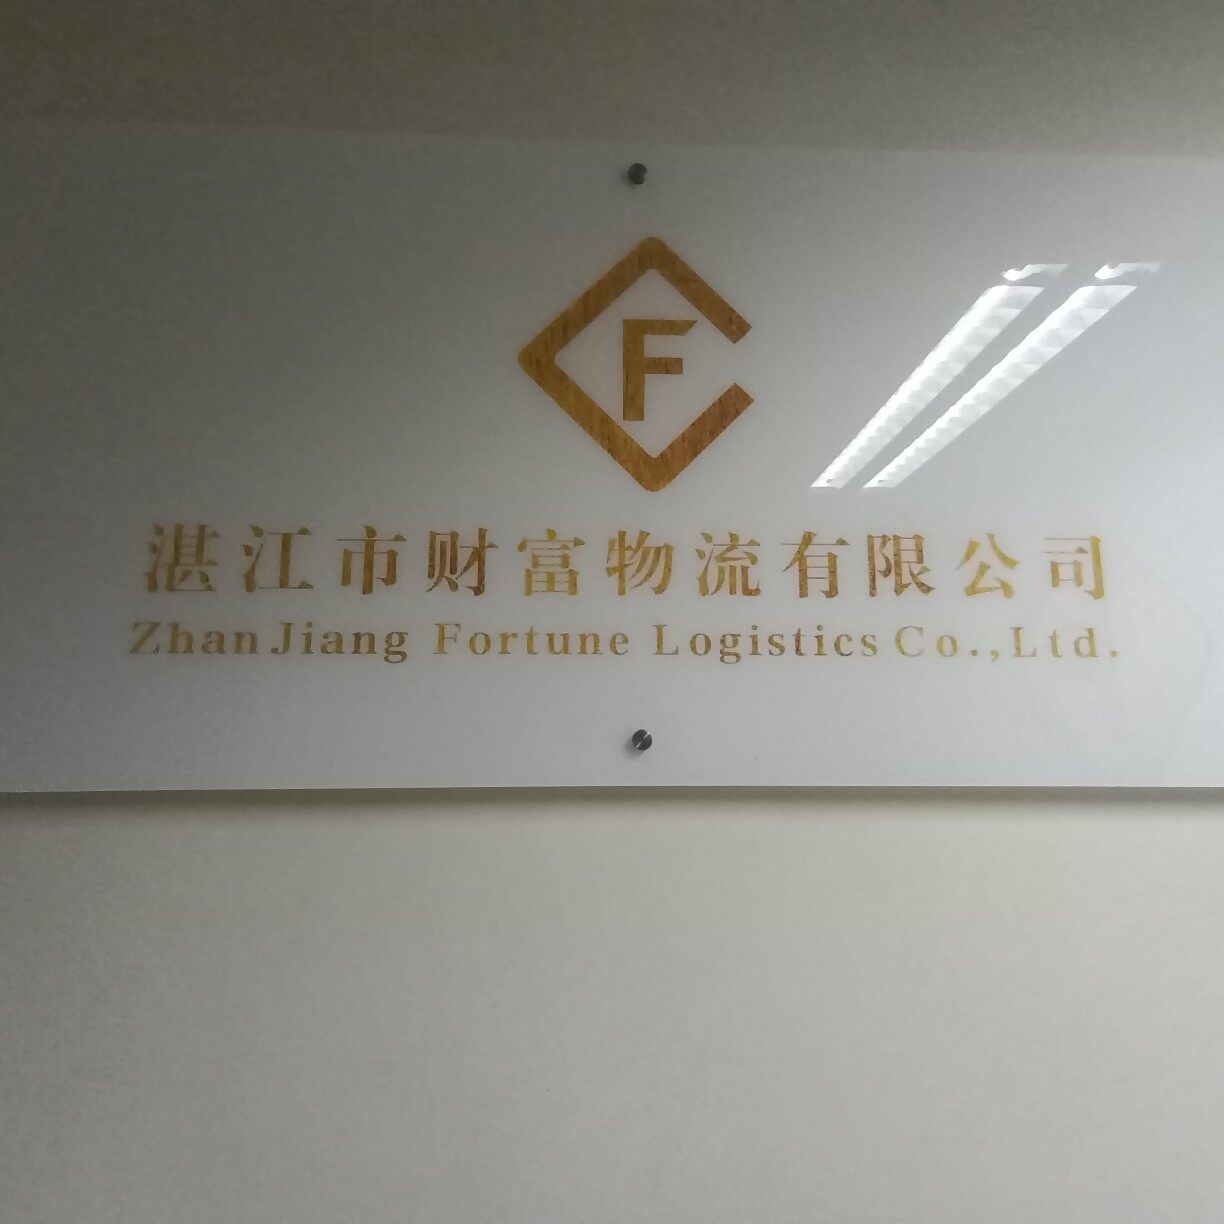 湛江市财富物流有限公司logo